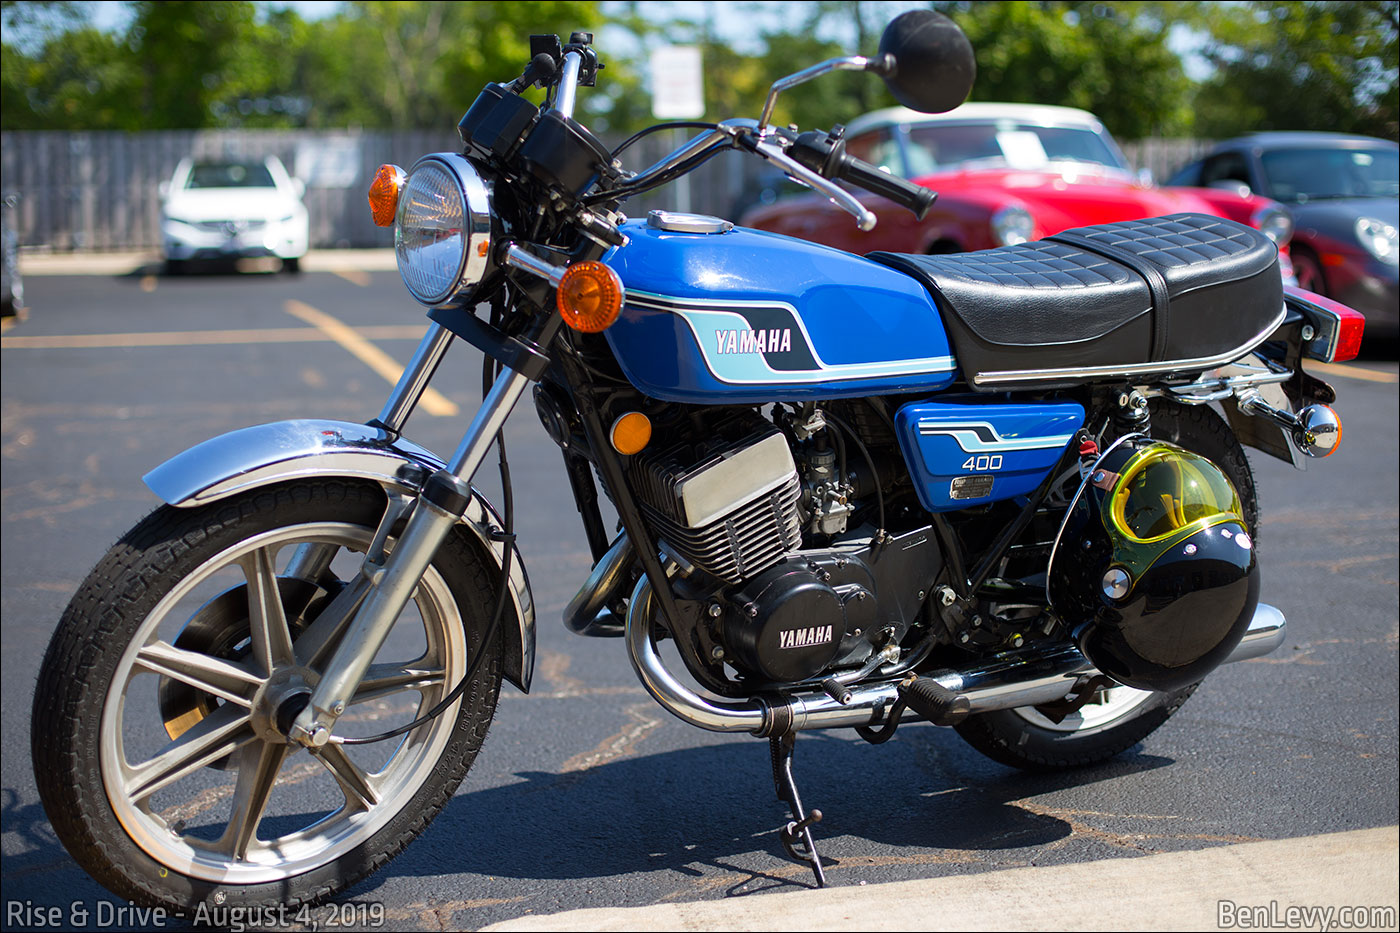 Yamaha XS400 motorcycle